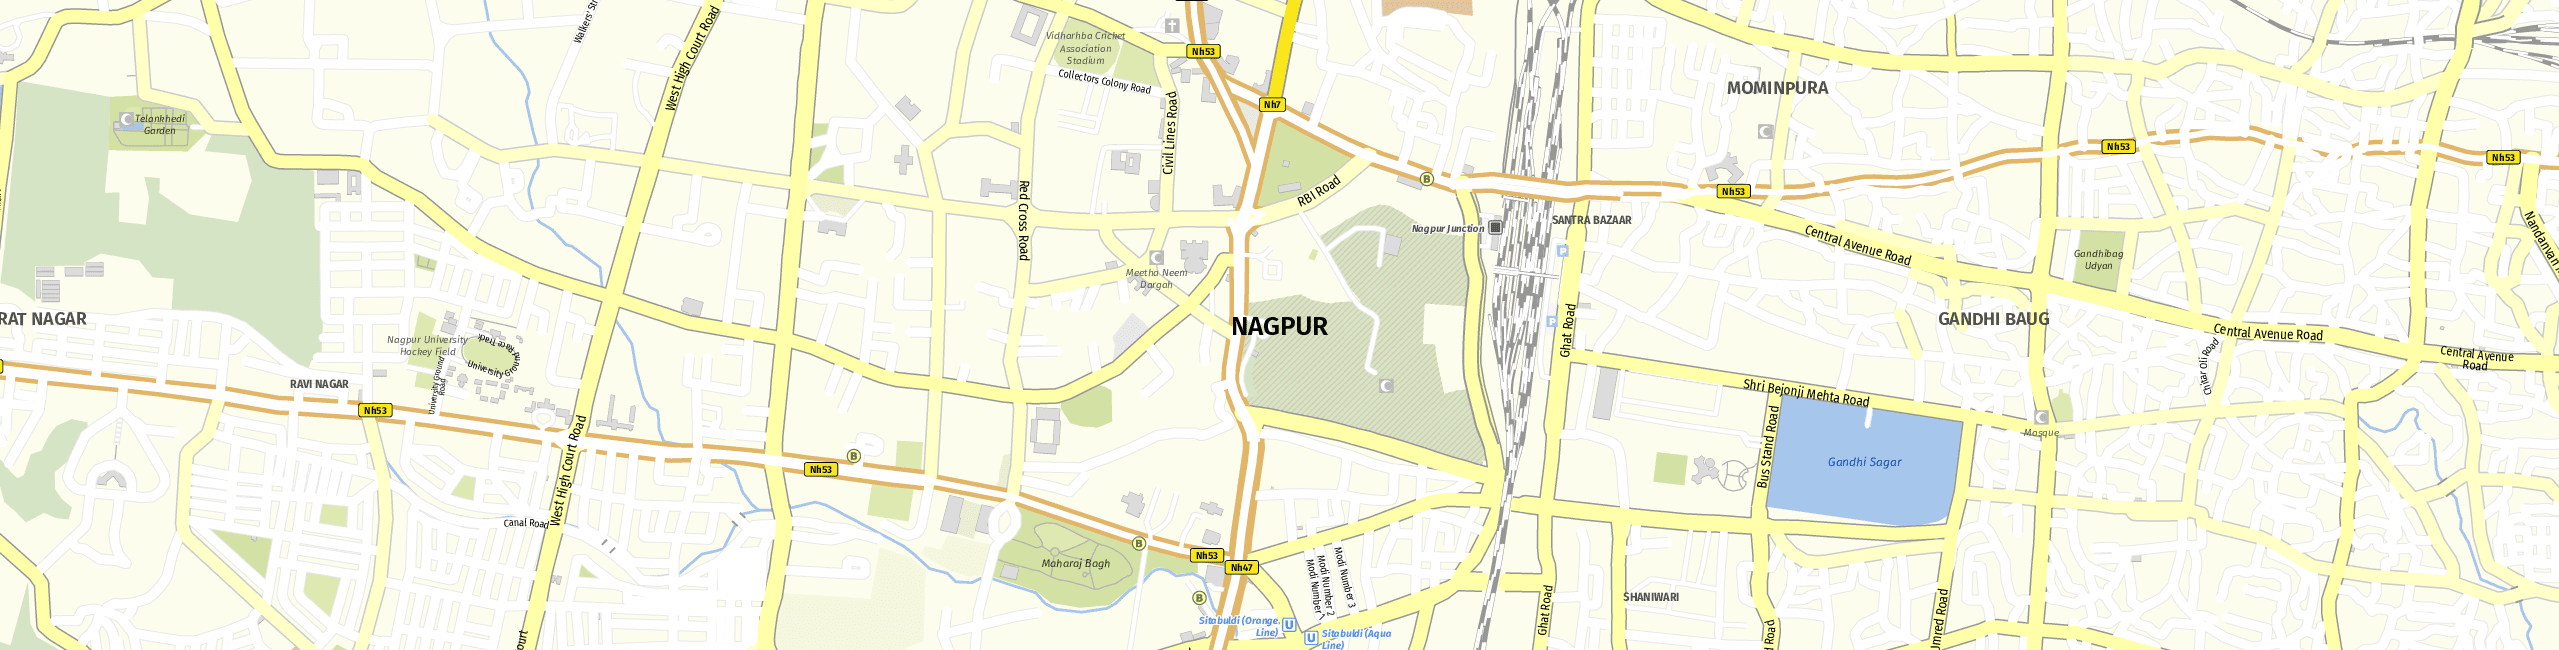 Stadtplan Nagpur zum Downloaden.